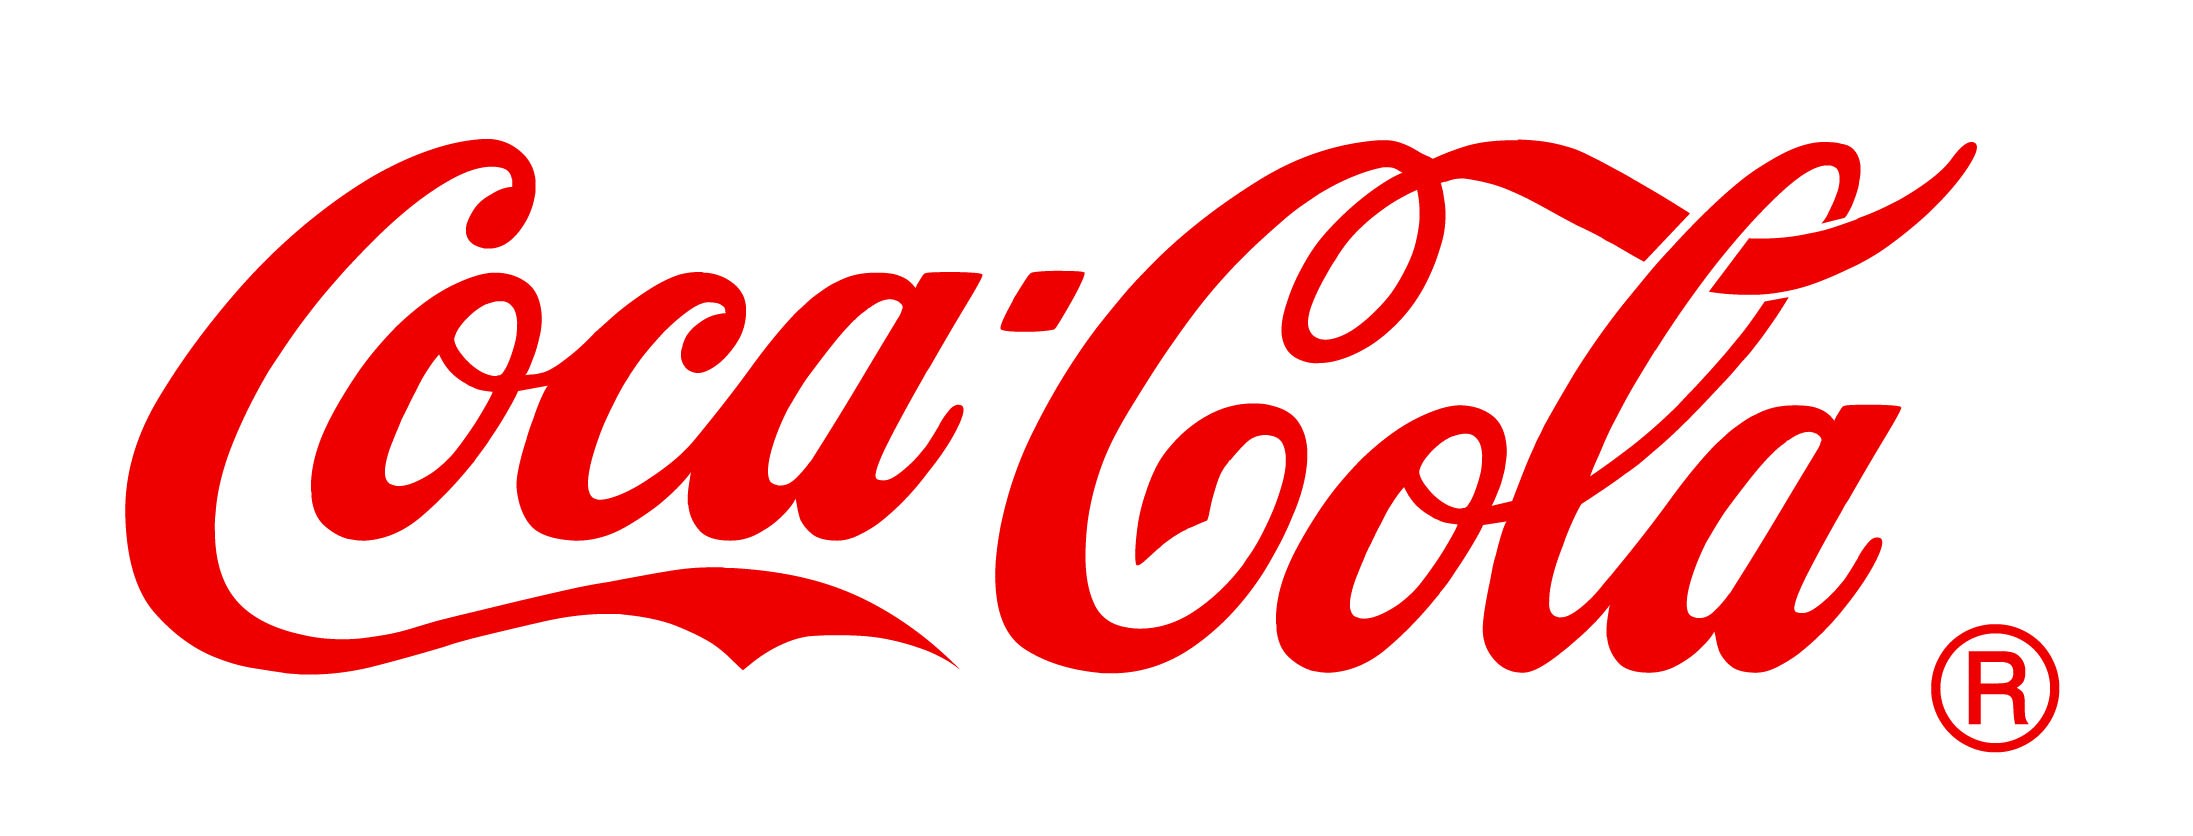 Los trabajadores de Coca Cola ya se pronunciaron